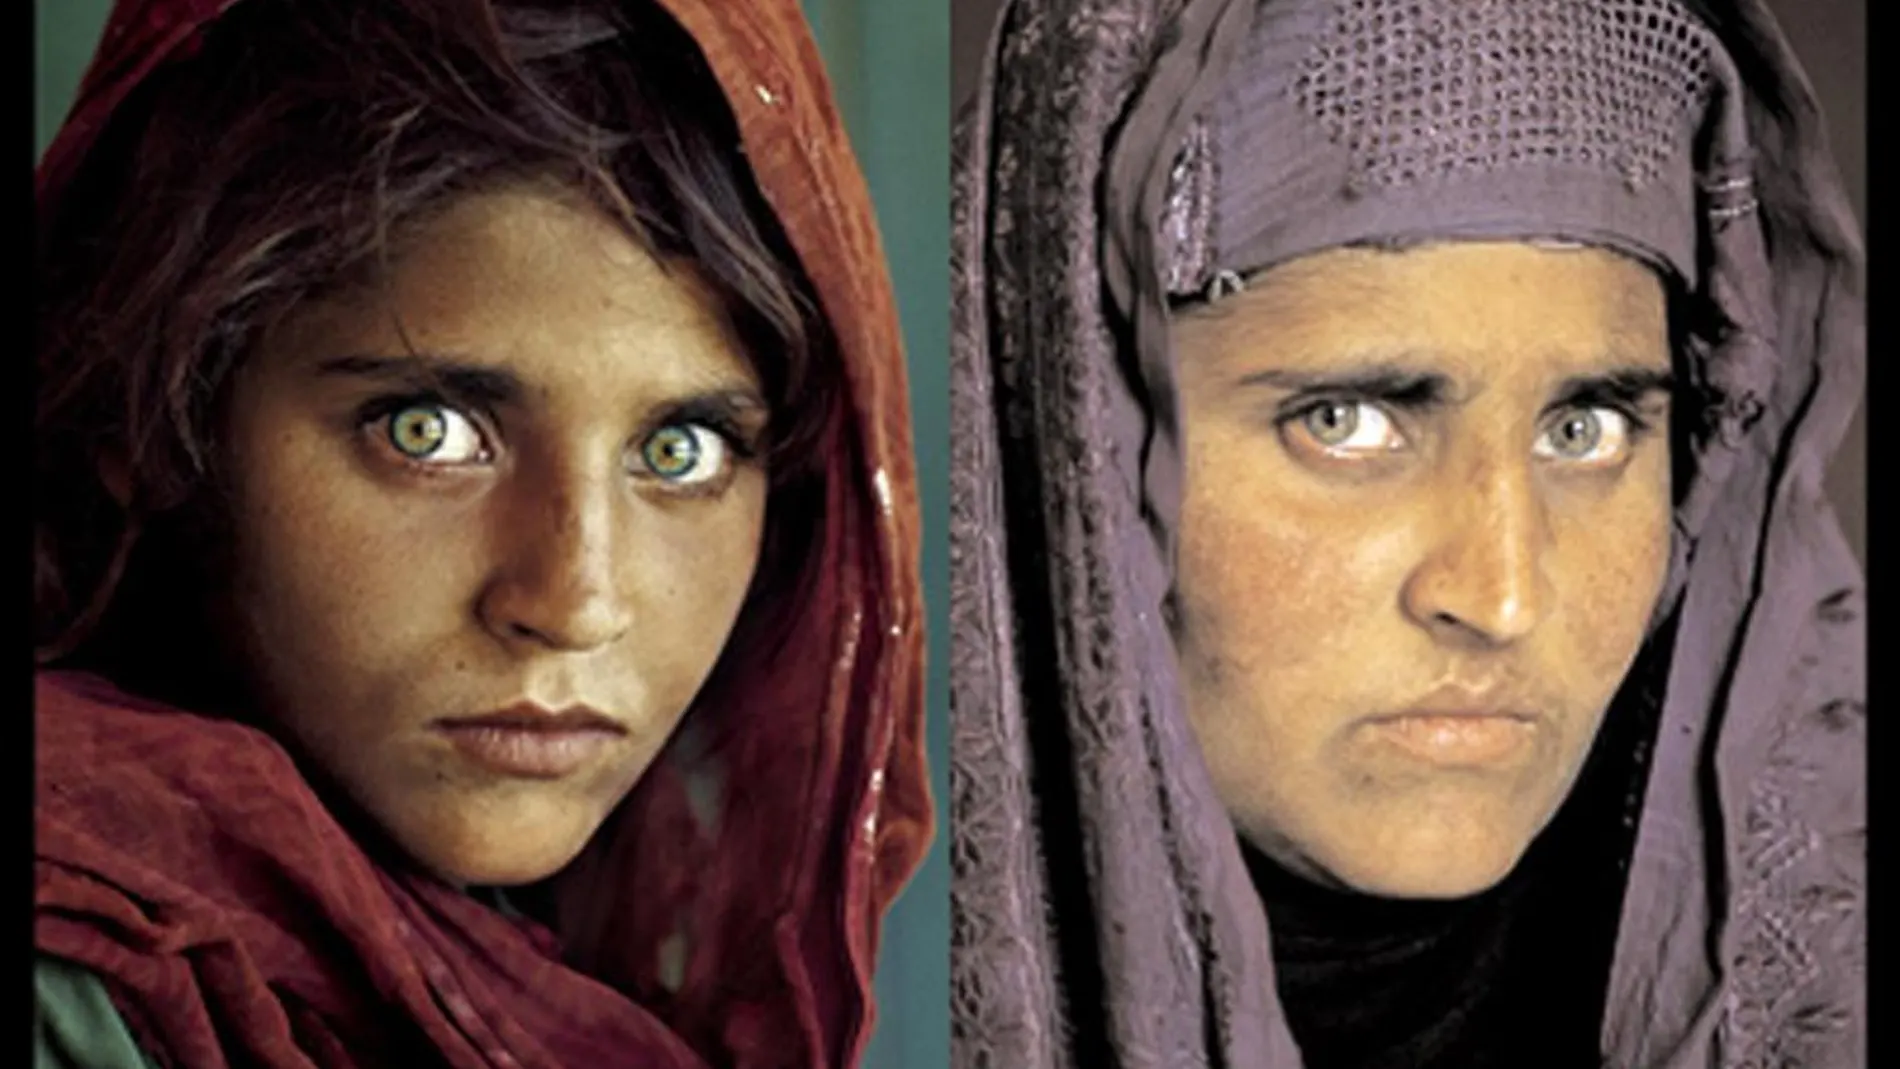 Sharbat Gula en la portada de National Geographic en 1985 y 17 años después